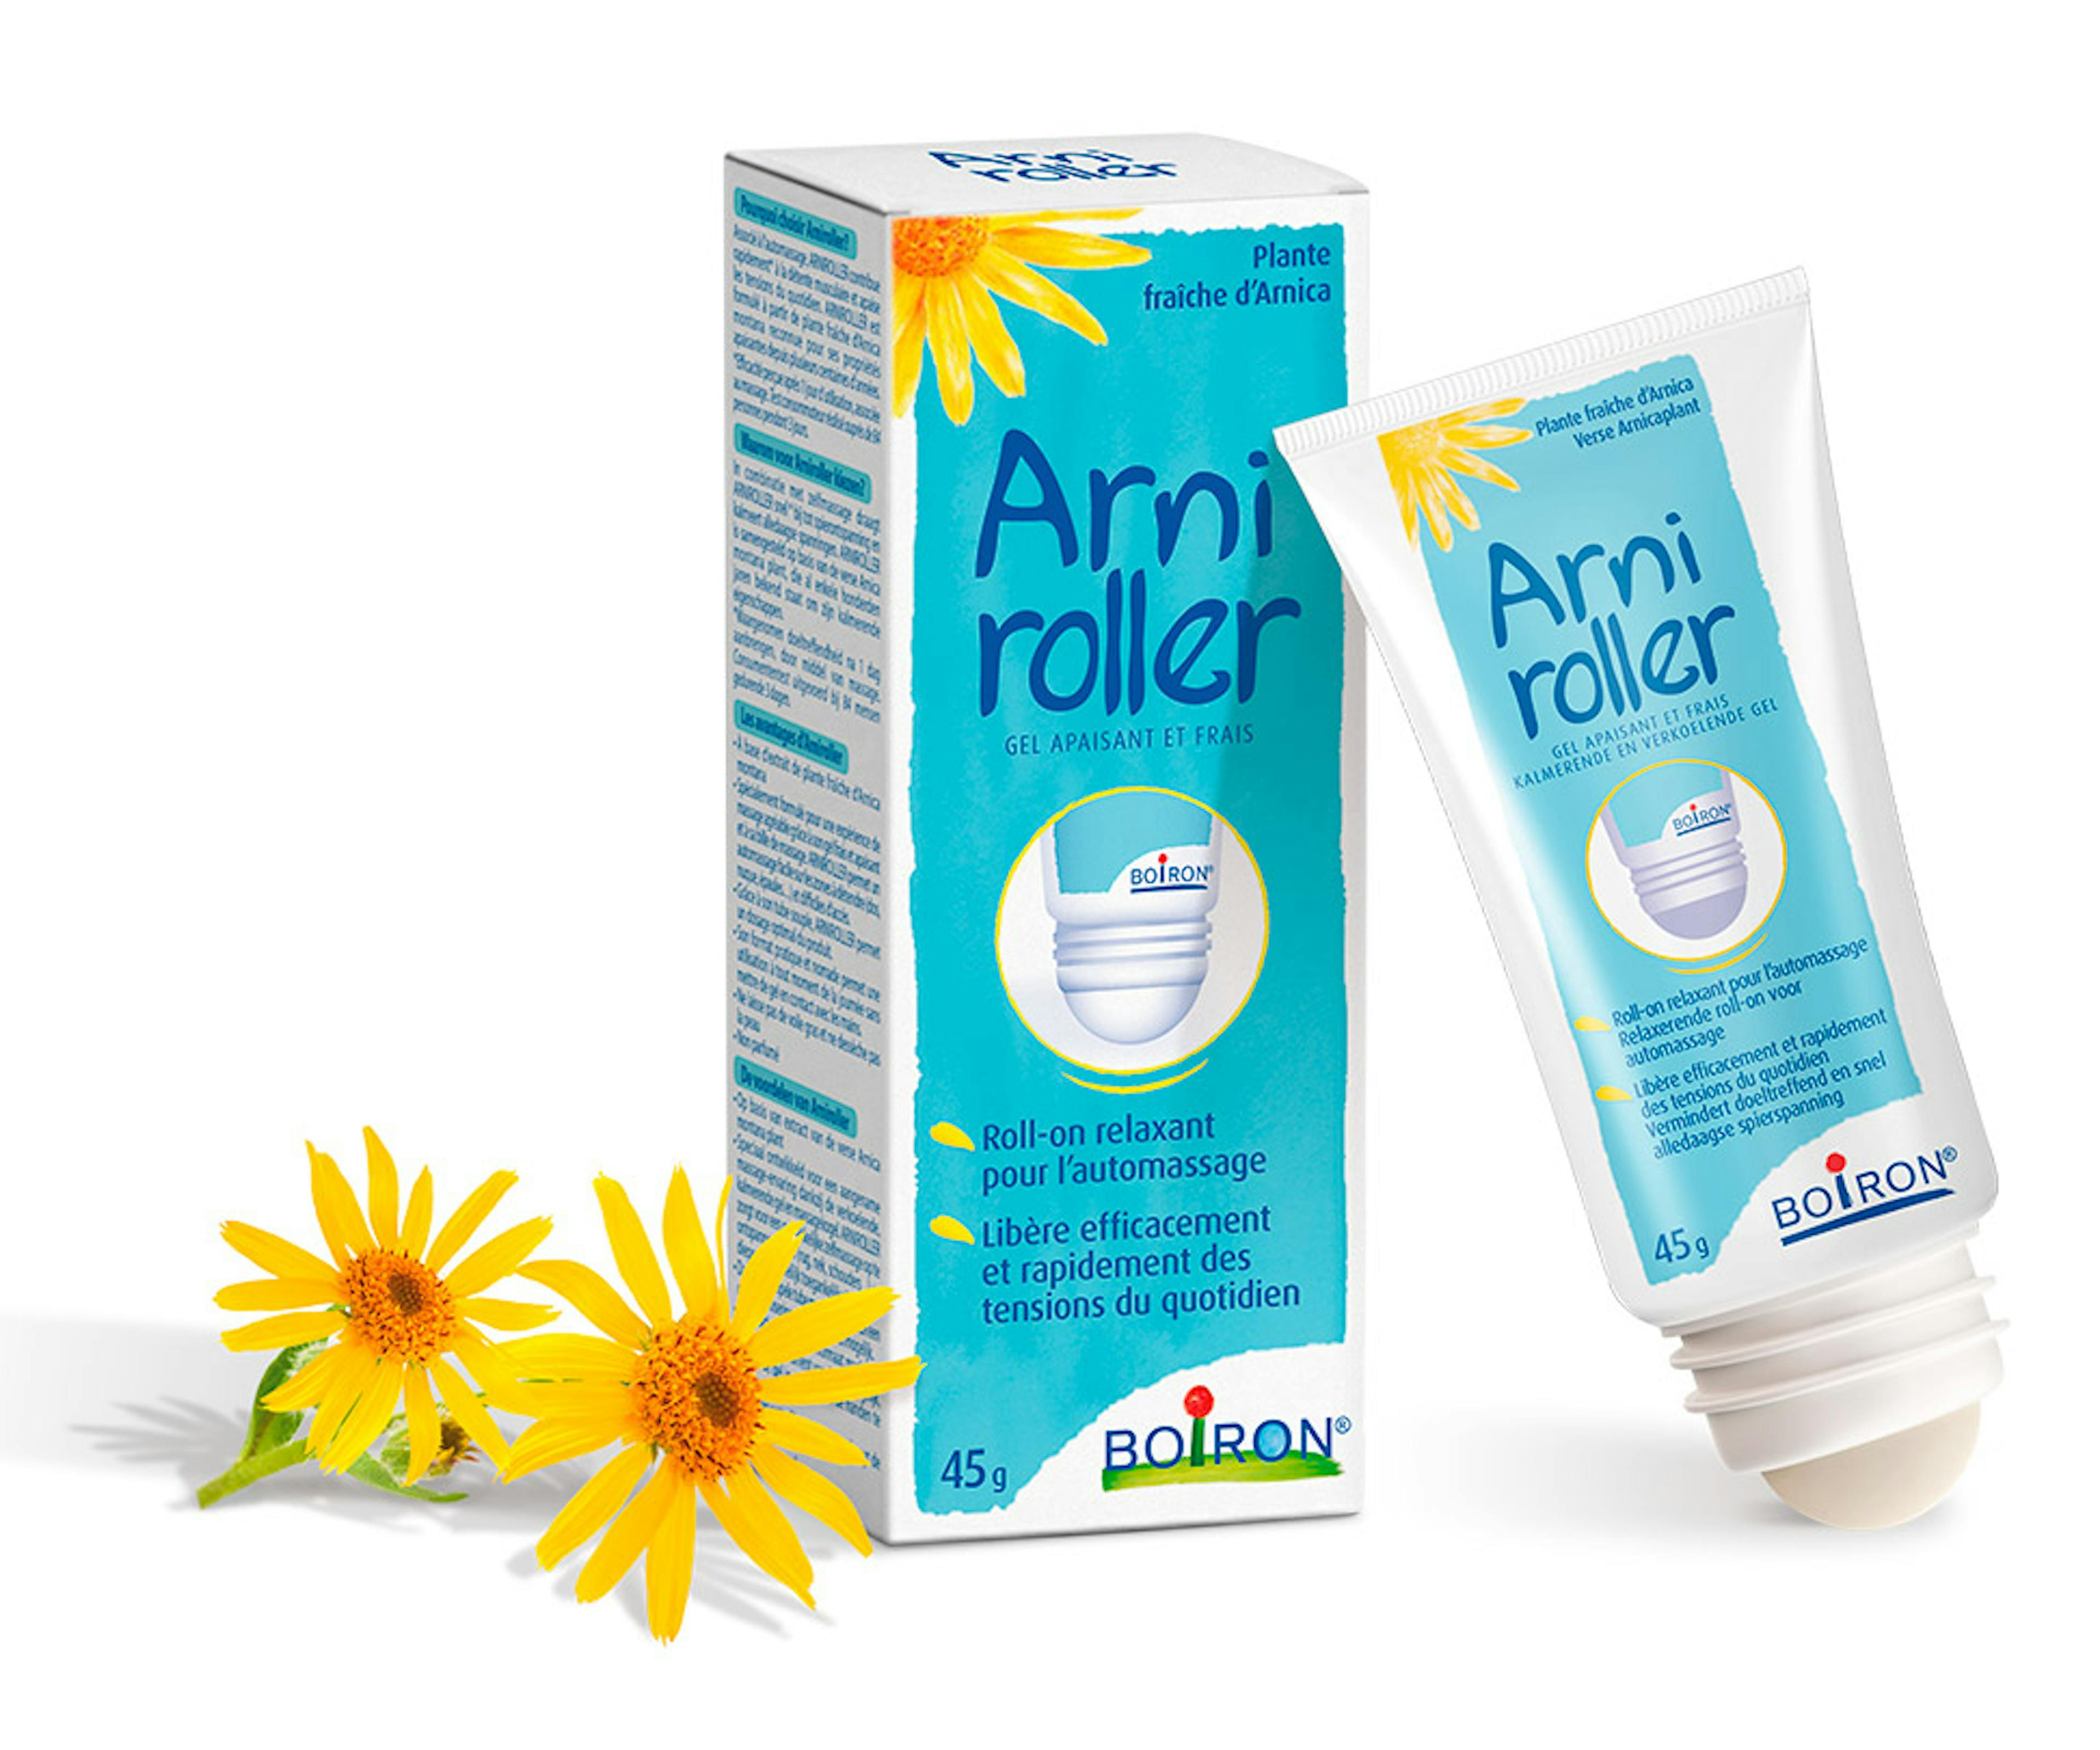 Arniroller, het nieuwe product van boiron voor spierspanning en spierstijfheid 